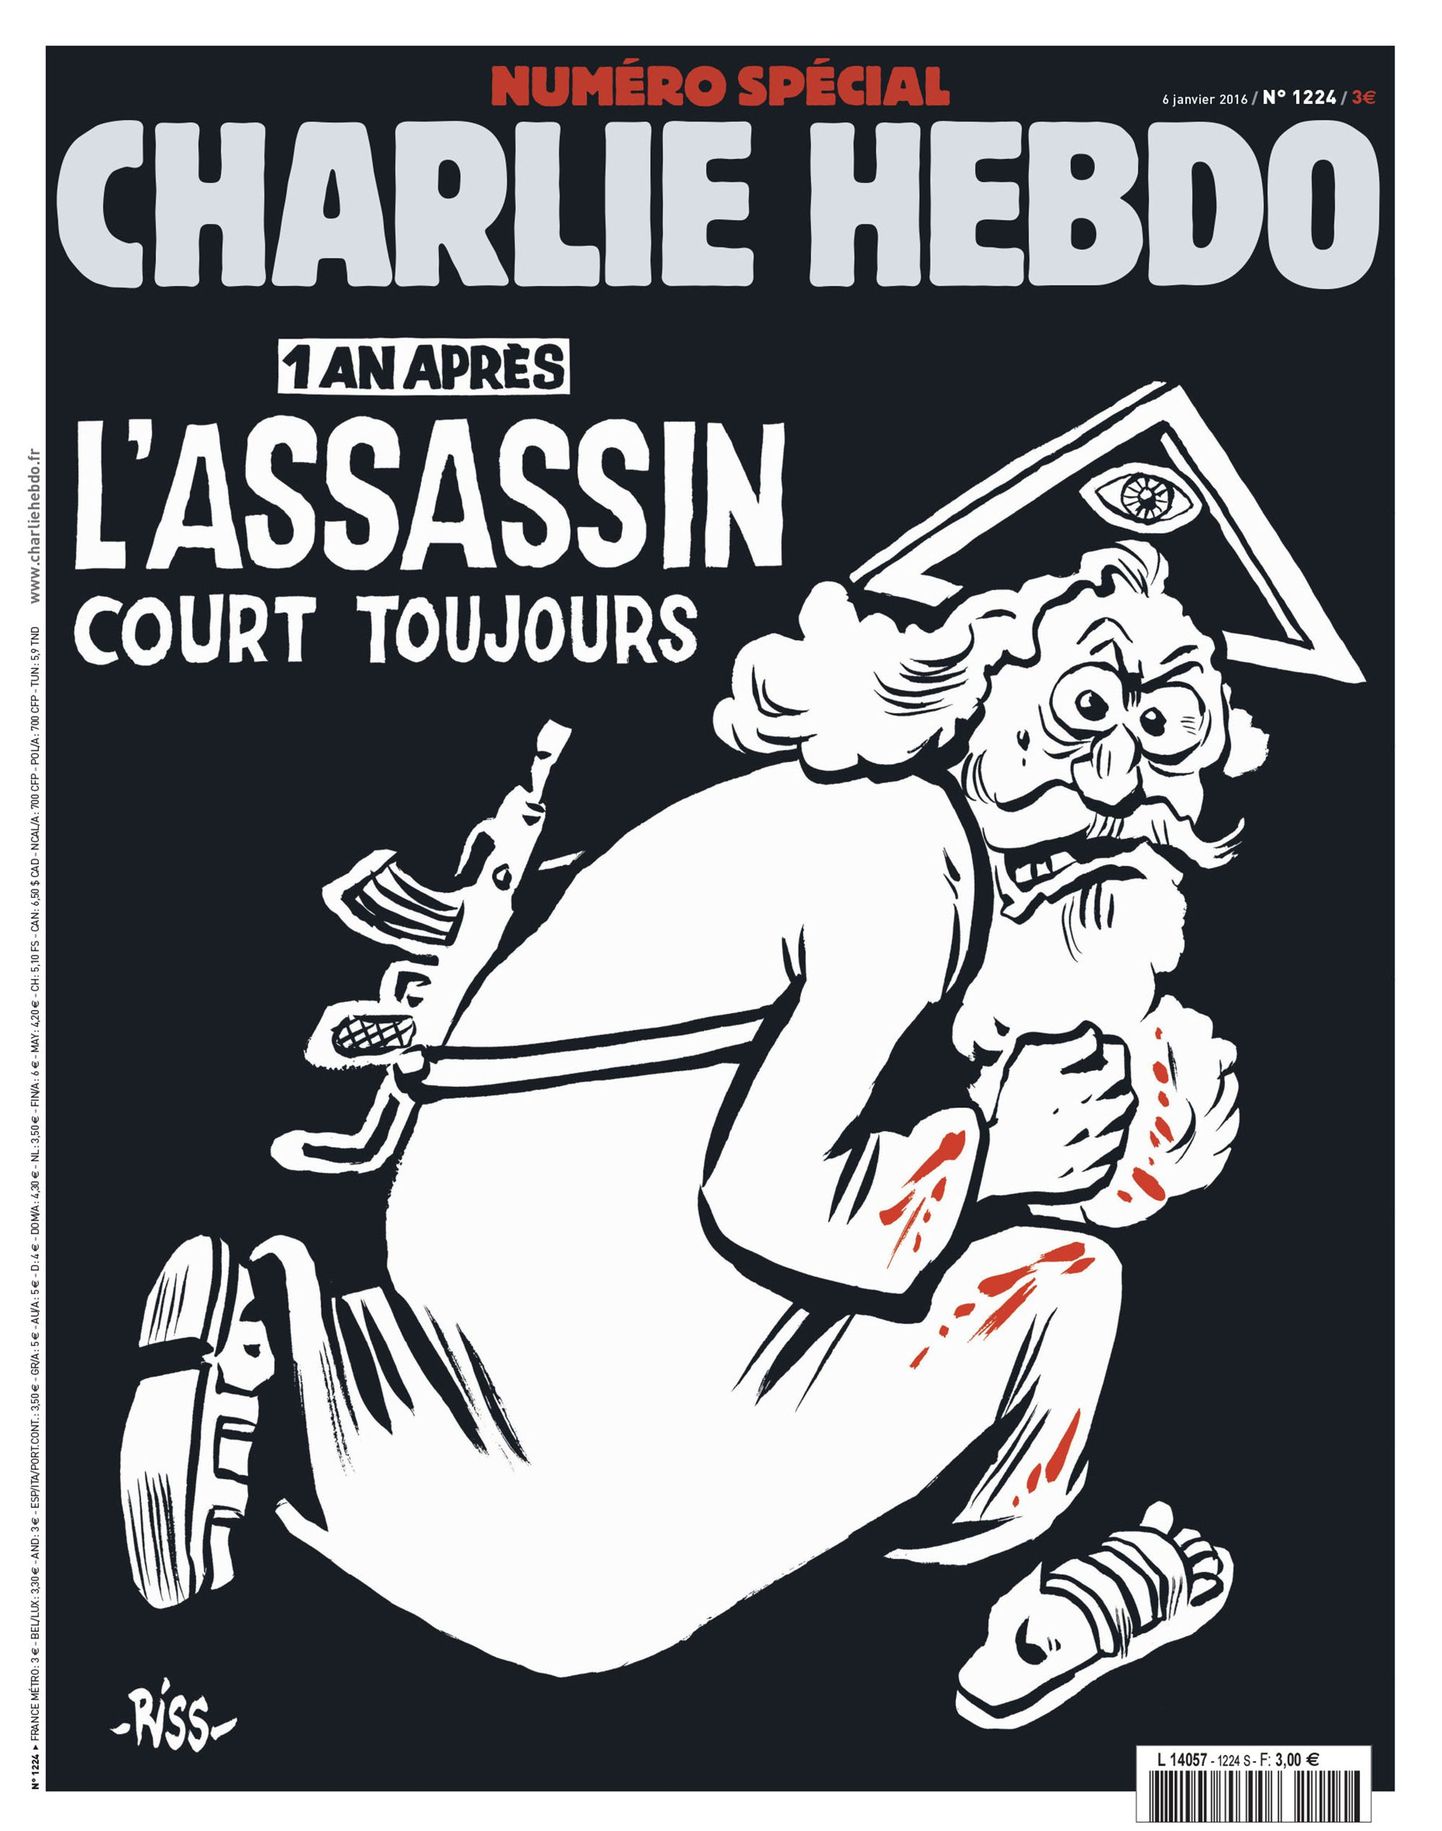 На обложке специального выпуска французского сатирического журнала Charlie Hebdo изображен бородатый «Бог» в окровавленной одежде, вооруженный автоматом Калашникова.